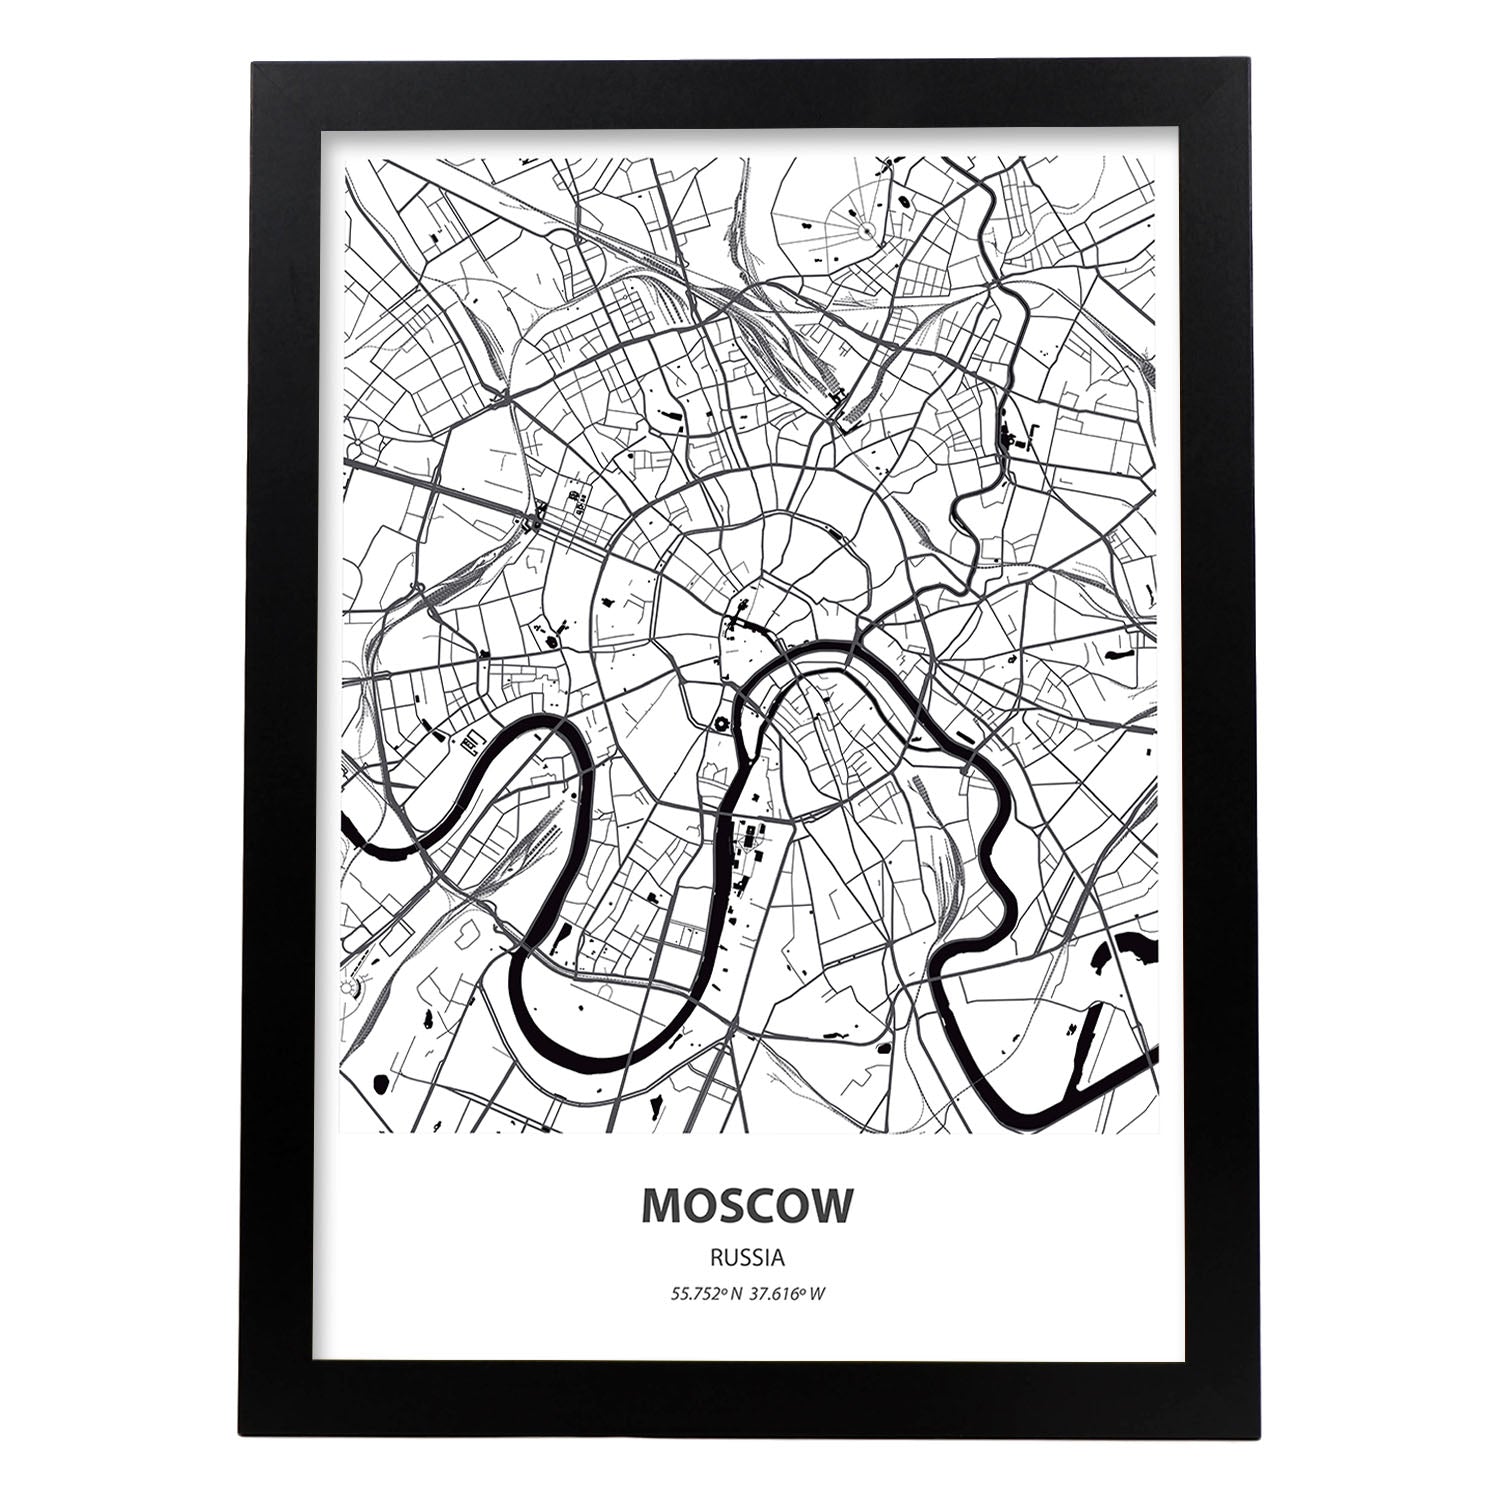 Poster con mapa de Moscow - Rusia. Láminas de ciudades de Asia con mares y ríos en color negro.-Artwork-Nacnic-A3-Marco Negro-Nacnic Estudio SL